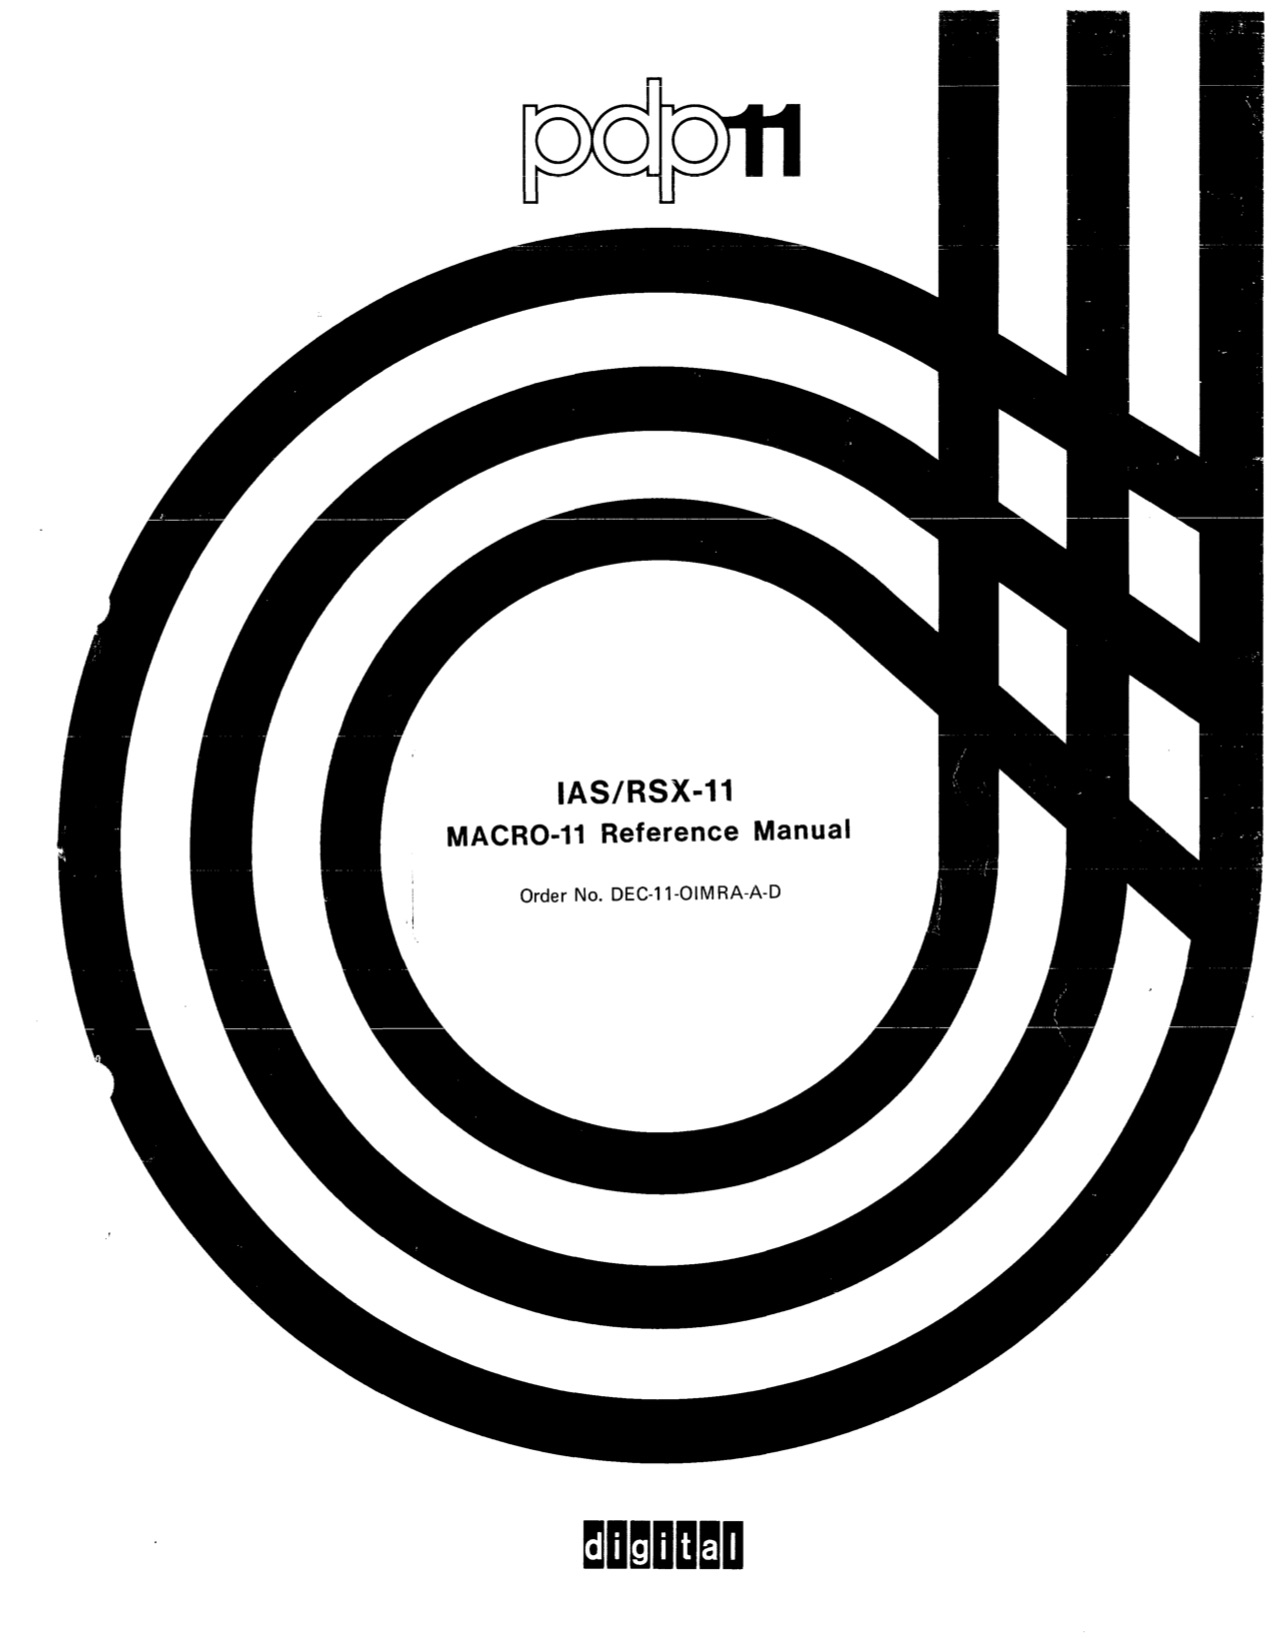 MACRO-11 Reference Manual (Dec 1975)